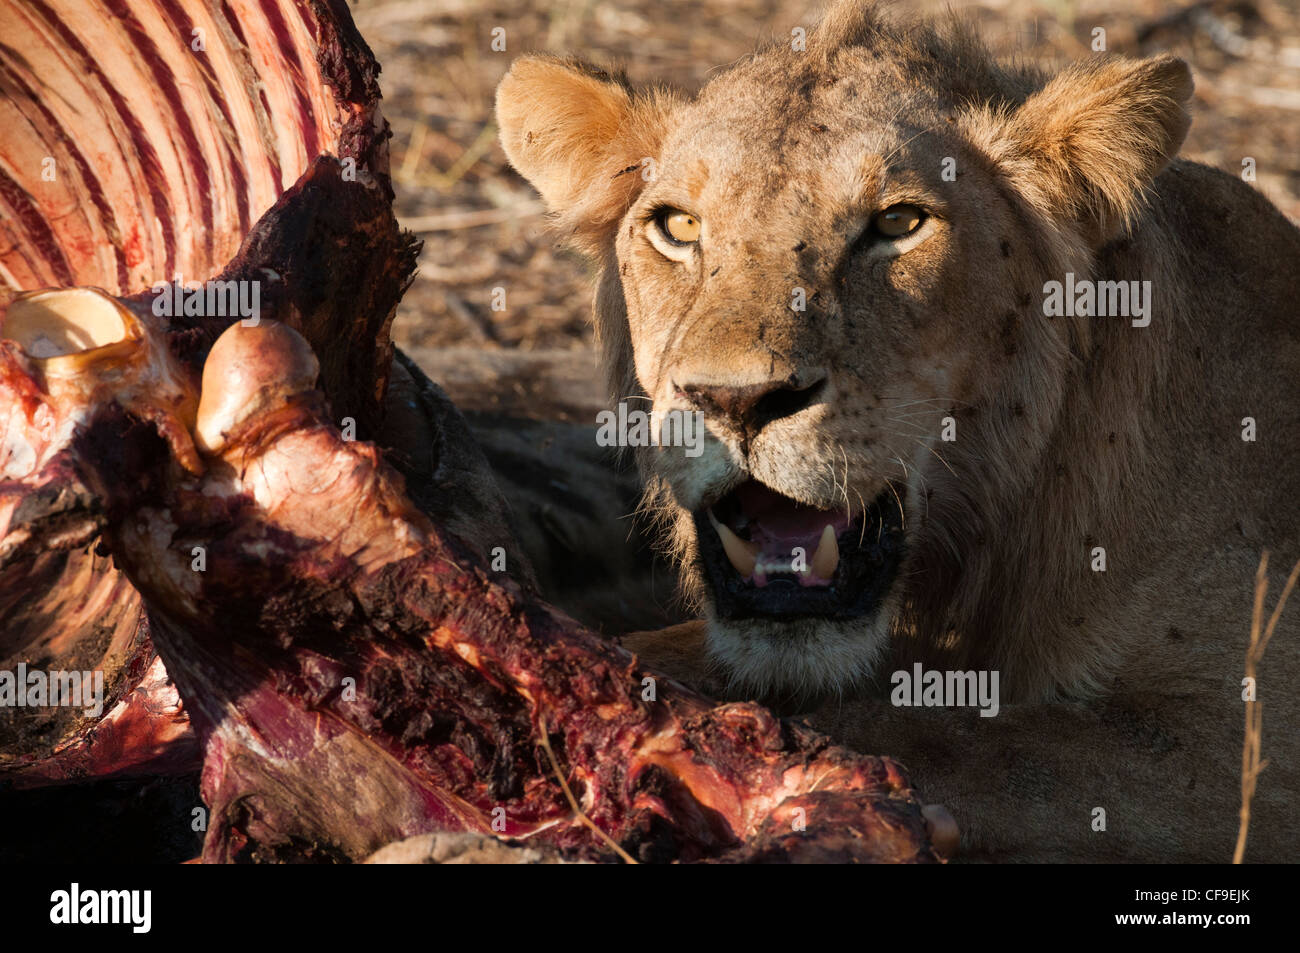 Les subadultes lion se nourrissant d'une carcasse de girafe Banque D'Images